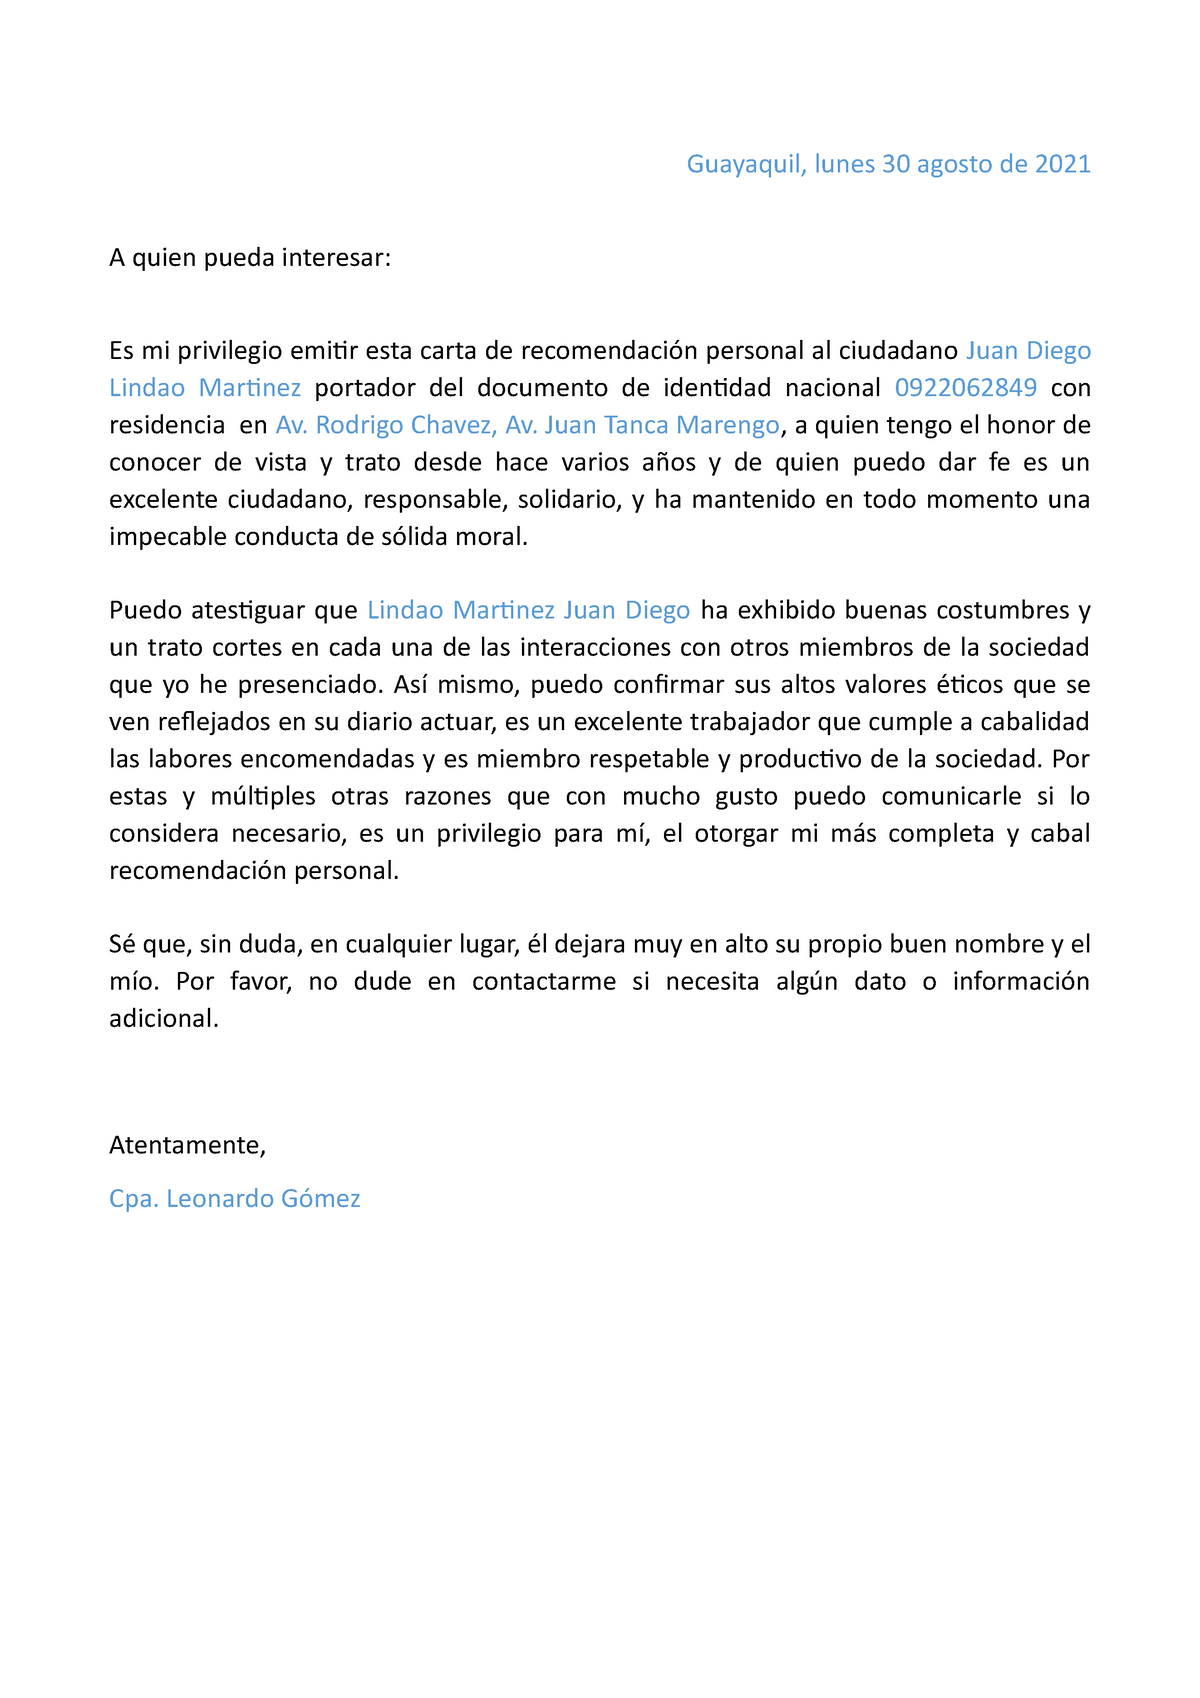 Carta Recomendacion Personal Guayaquil Lunes 30 Agosto De 2021 A Quien Pueda Interesar Es Mi